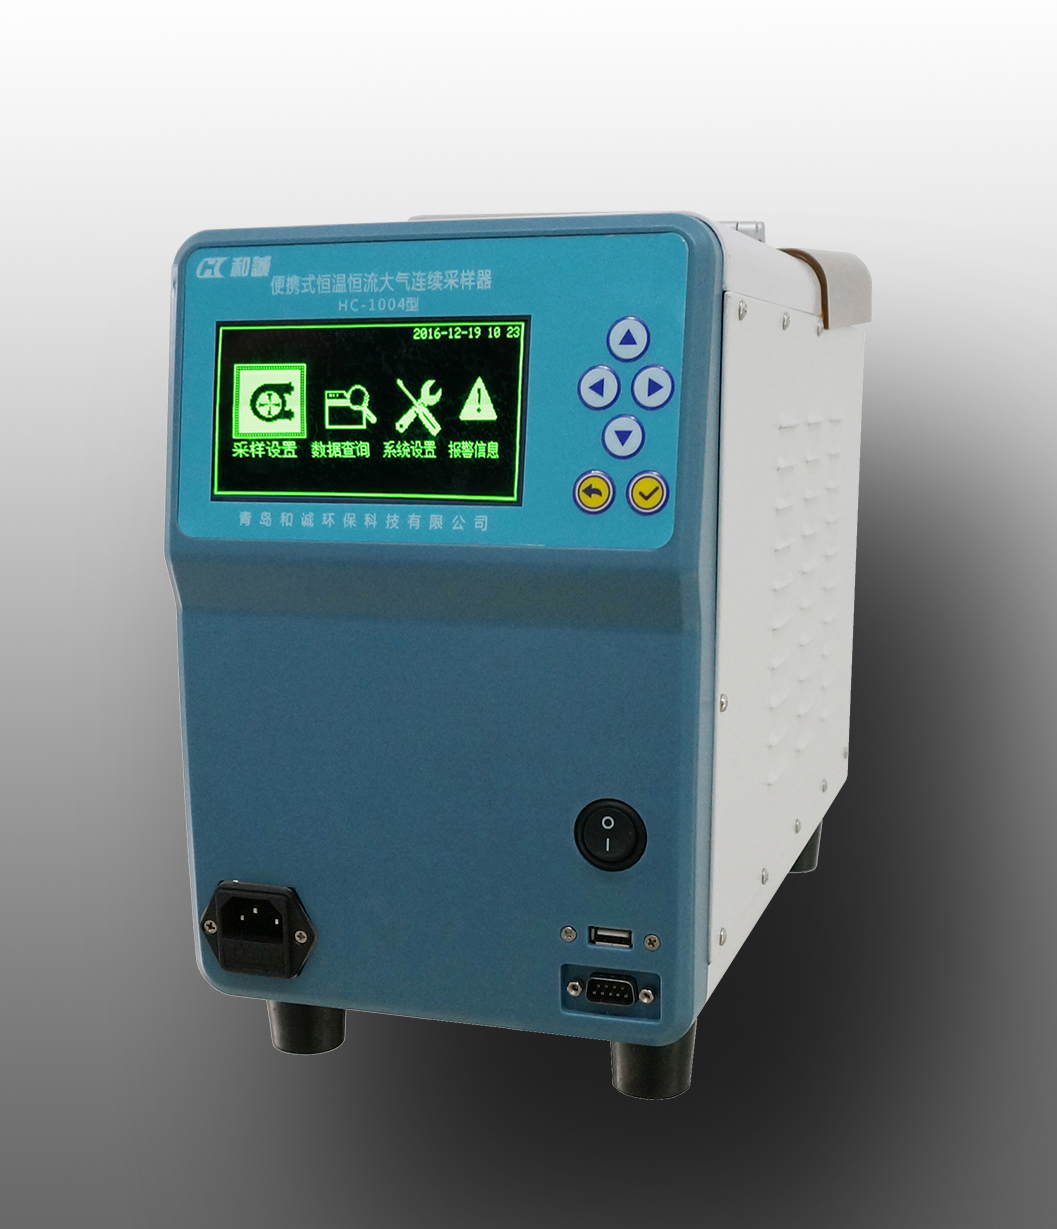 青岛和诚HC-1004型便携式恒温恒流大气连续采样器图片